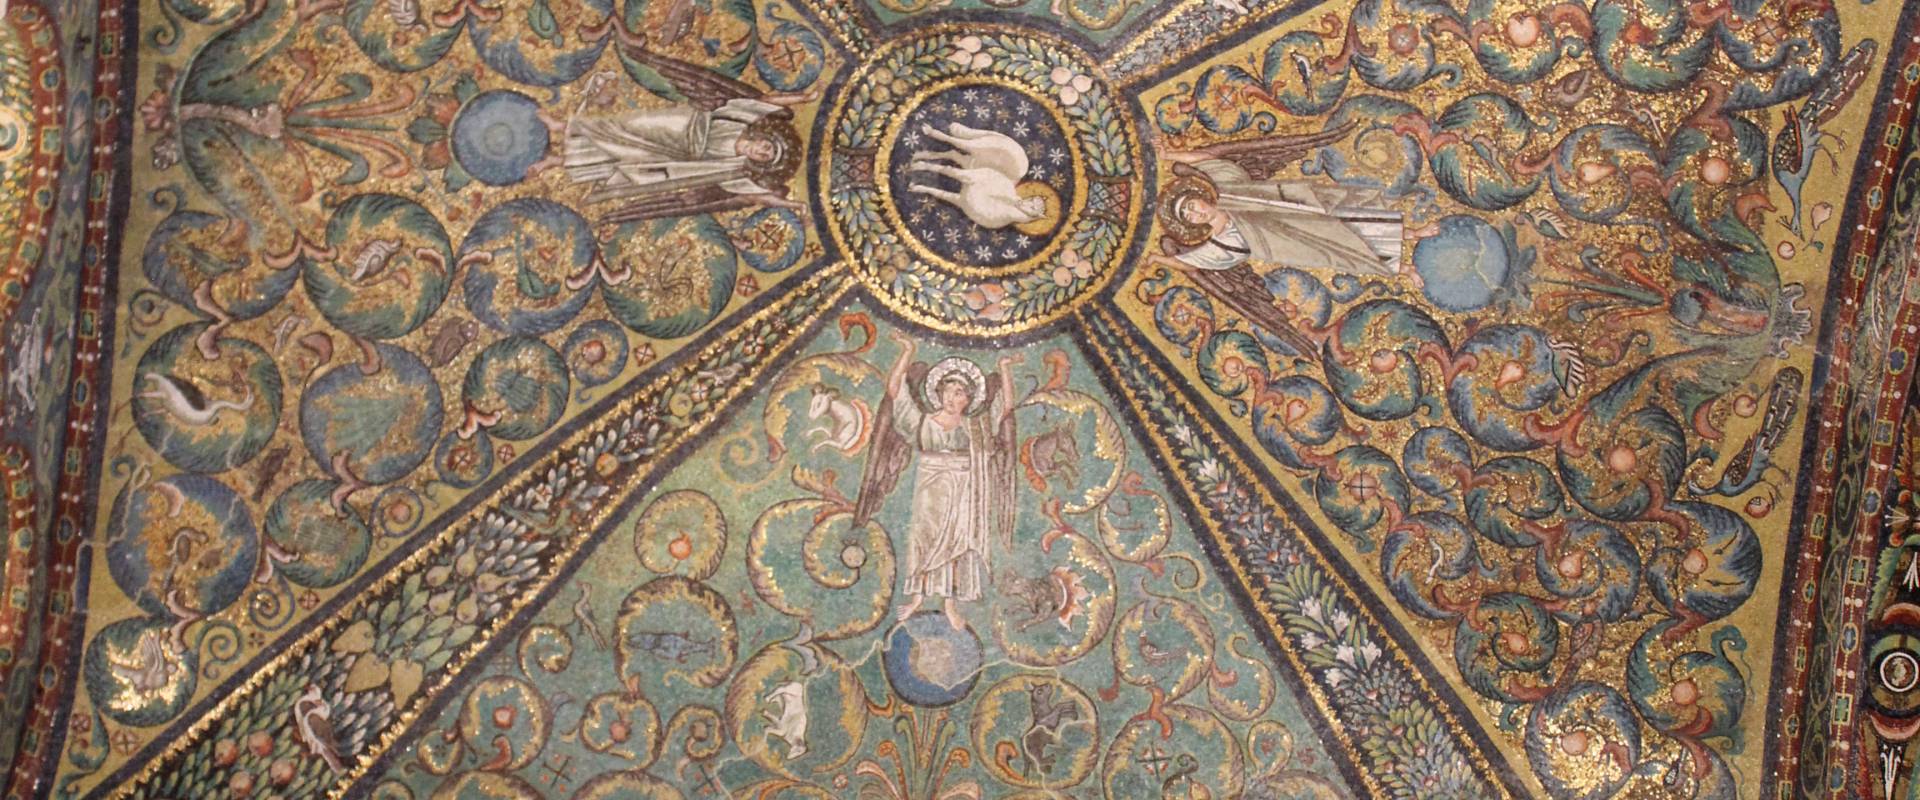 San Vitale - decorazione musiva della cupola foto di Chiara Dobro